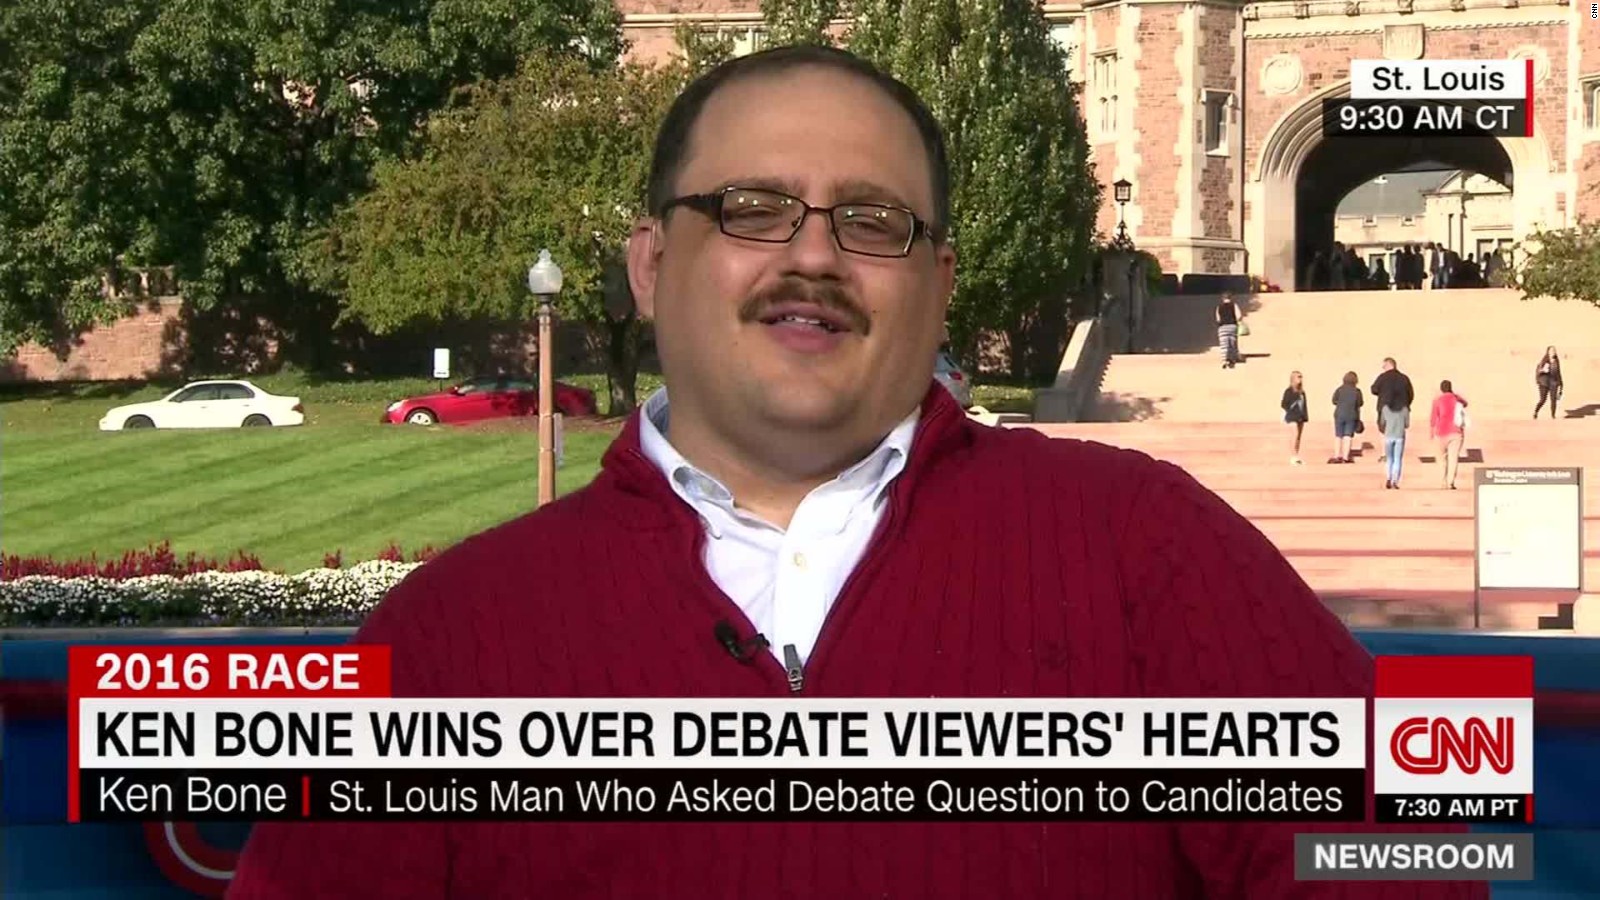 Ken Bone: The REAL winner of the debate - CNN Video